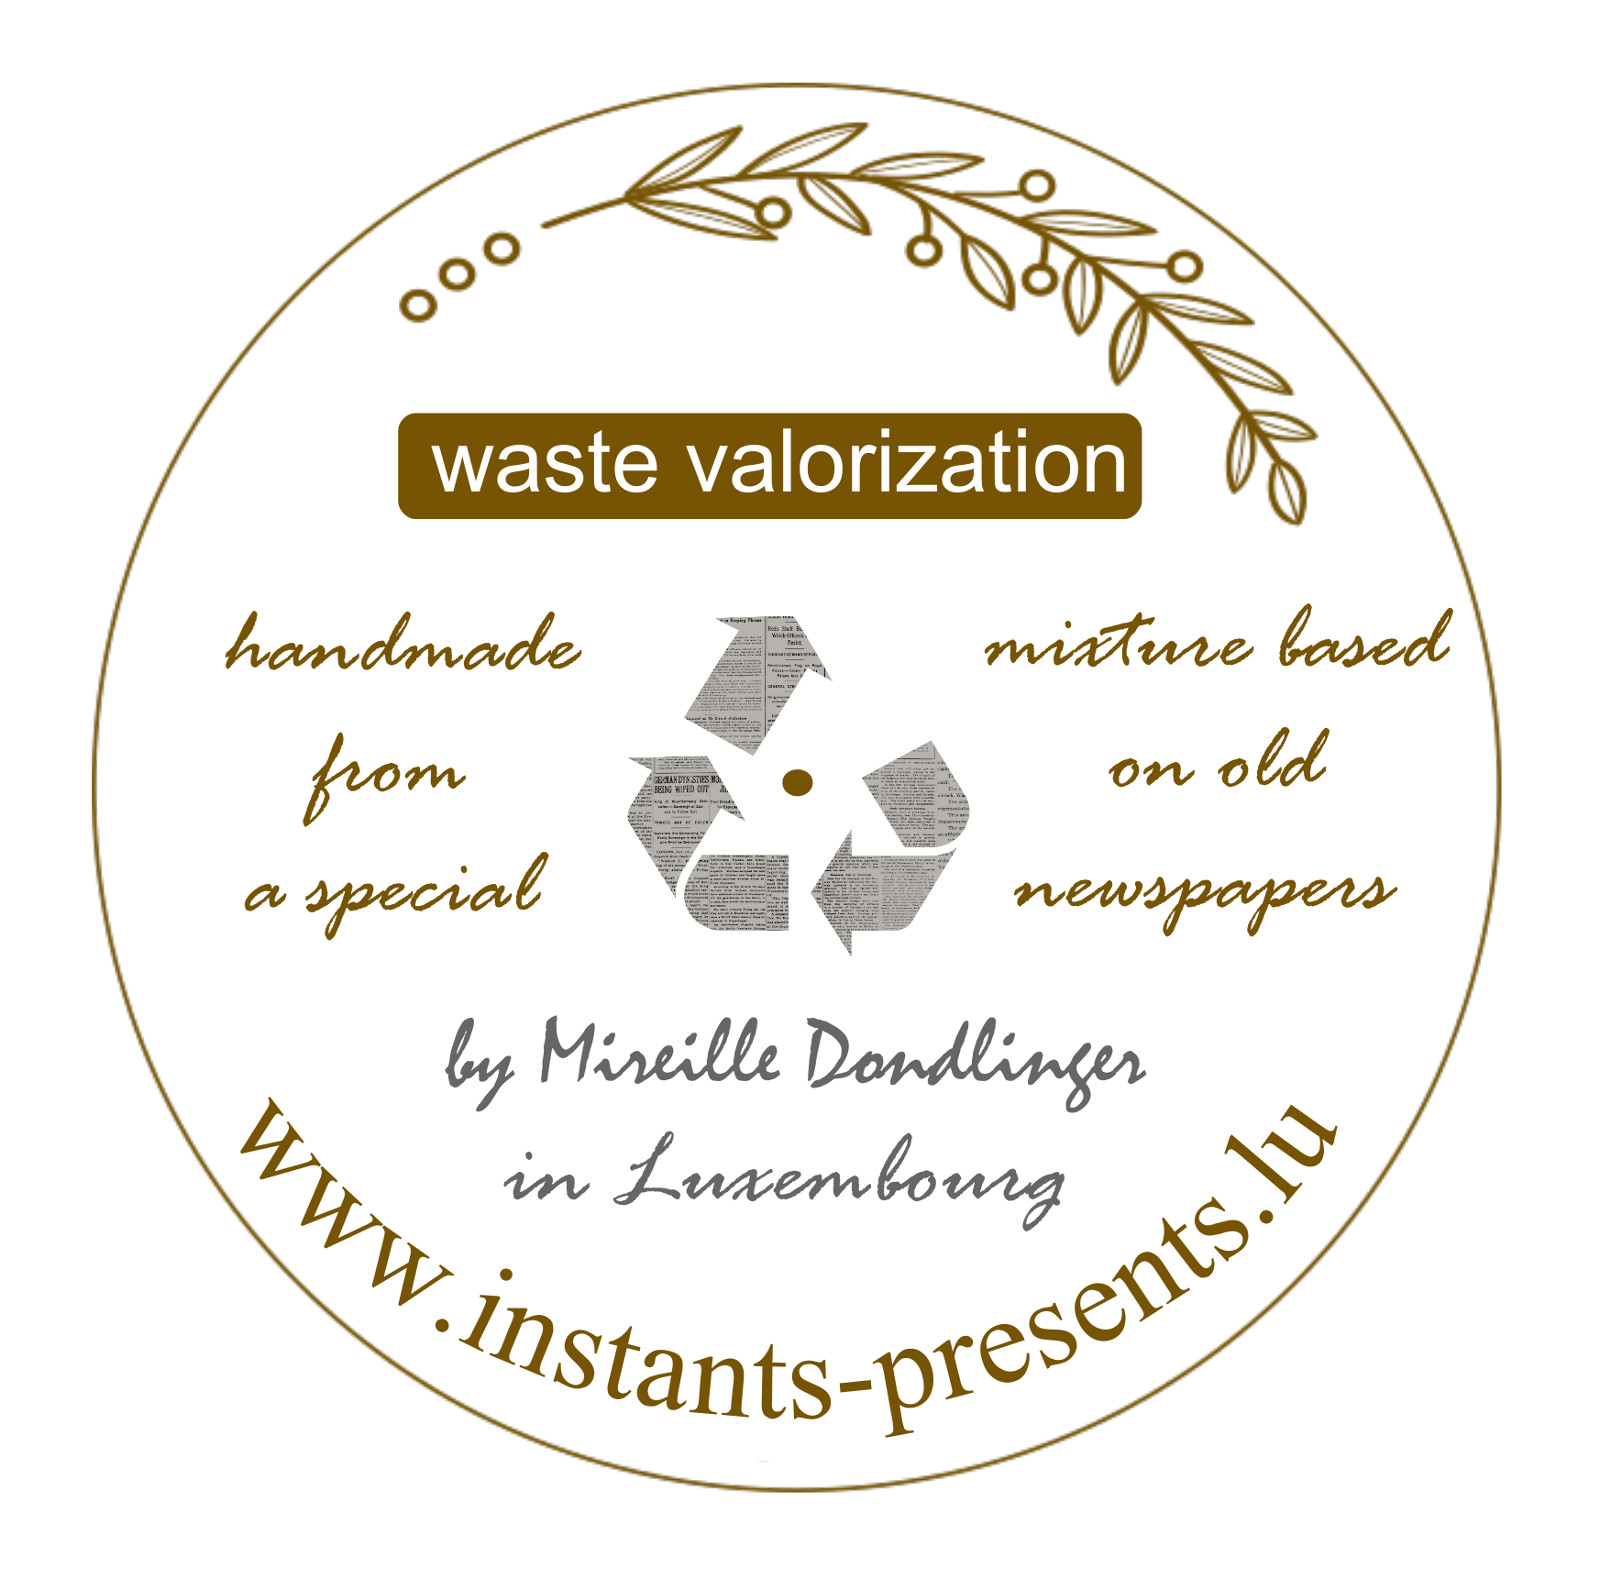 etiquettes sticker waste valorization 1600